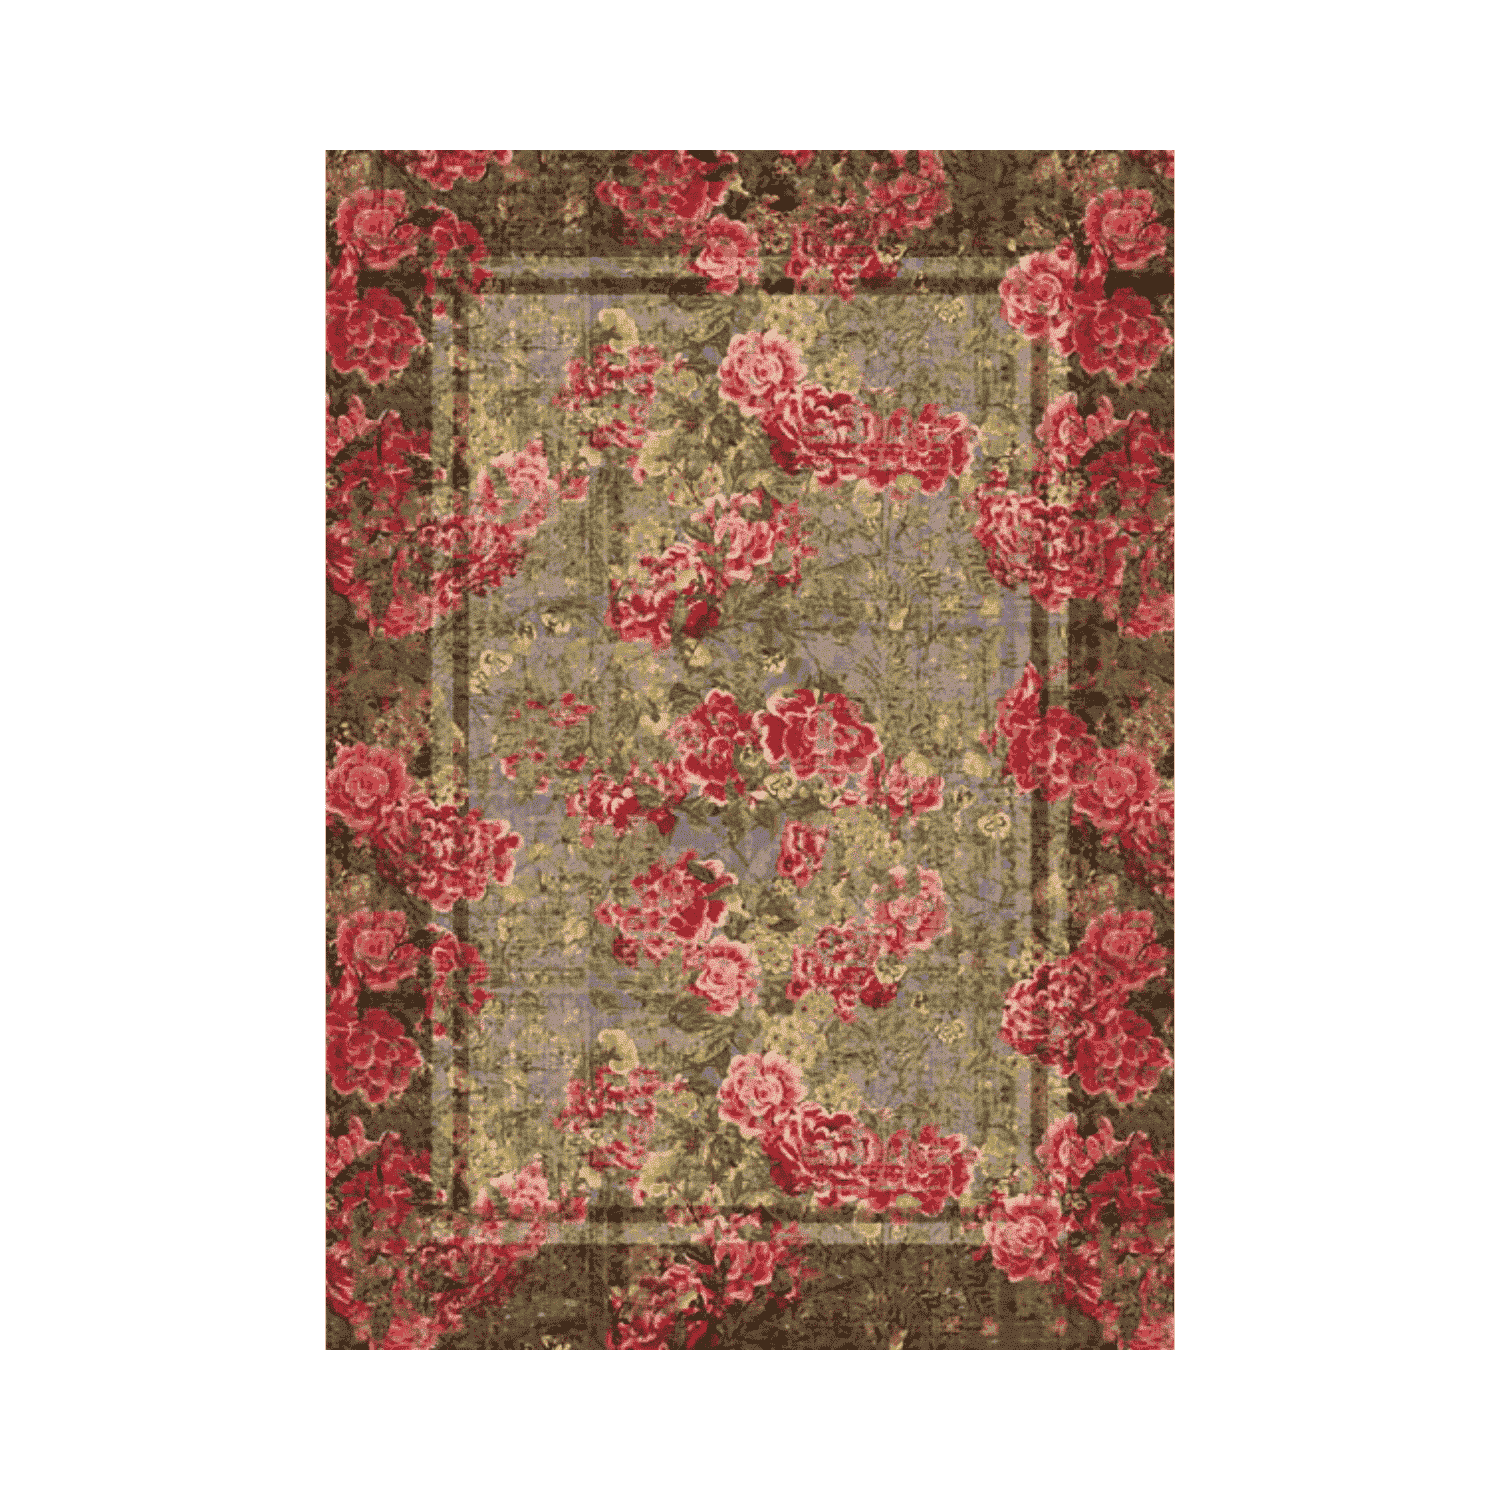 roseto-tappeto-arredo-emozioni-artista-bouquet-multicolor-rosa-classico-romantico-front